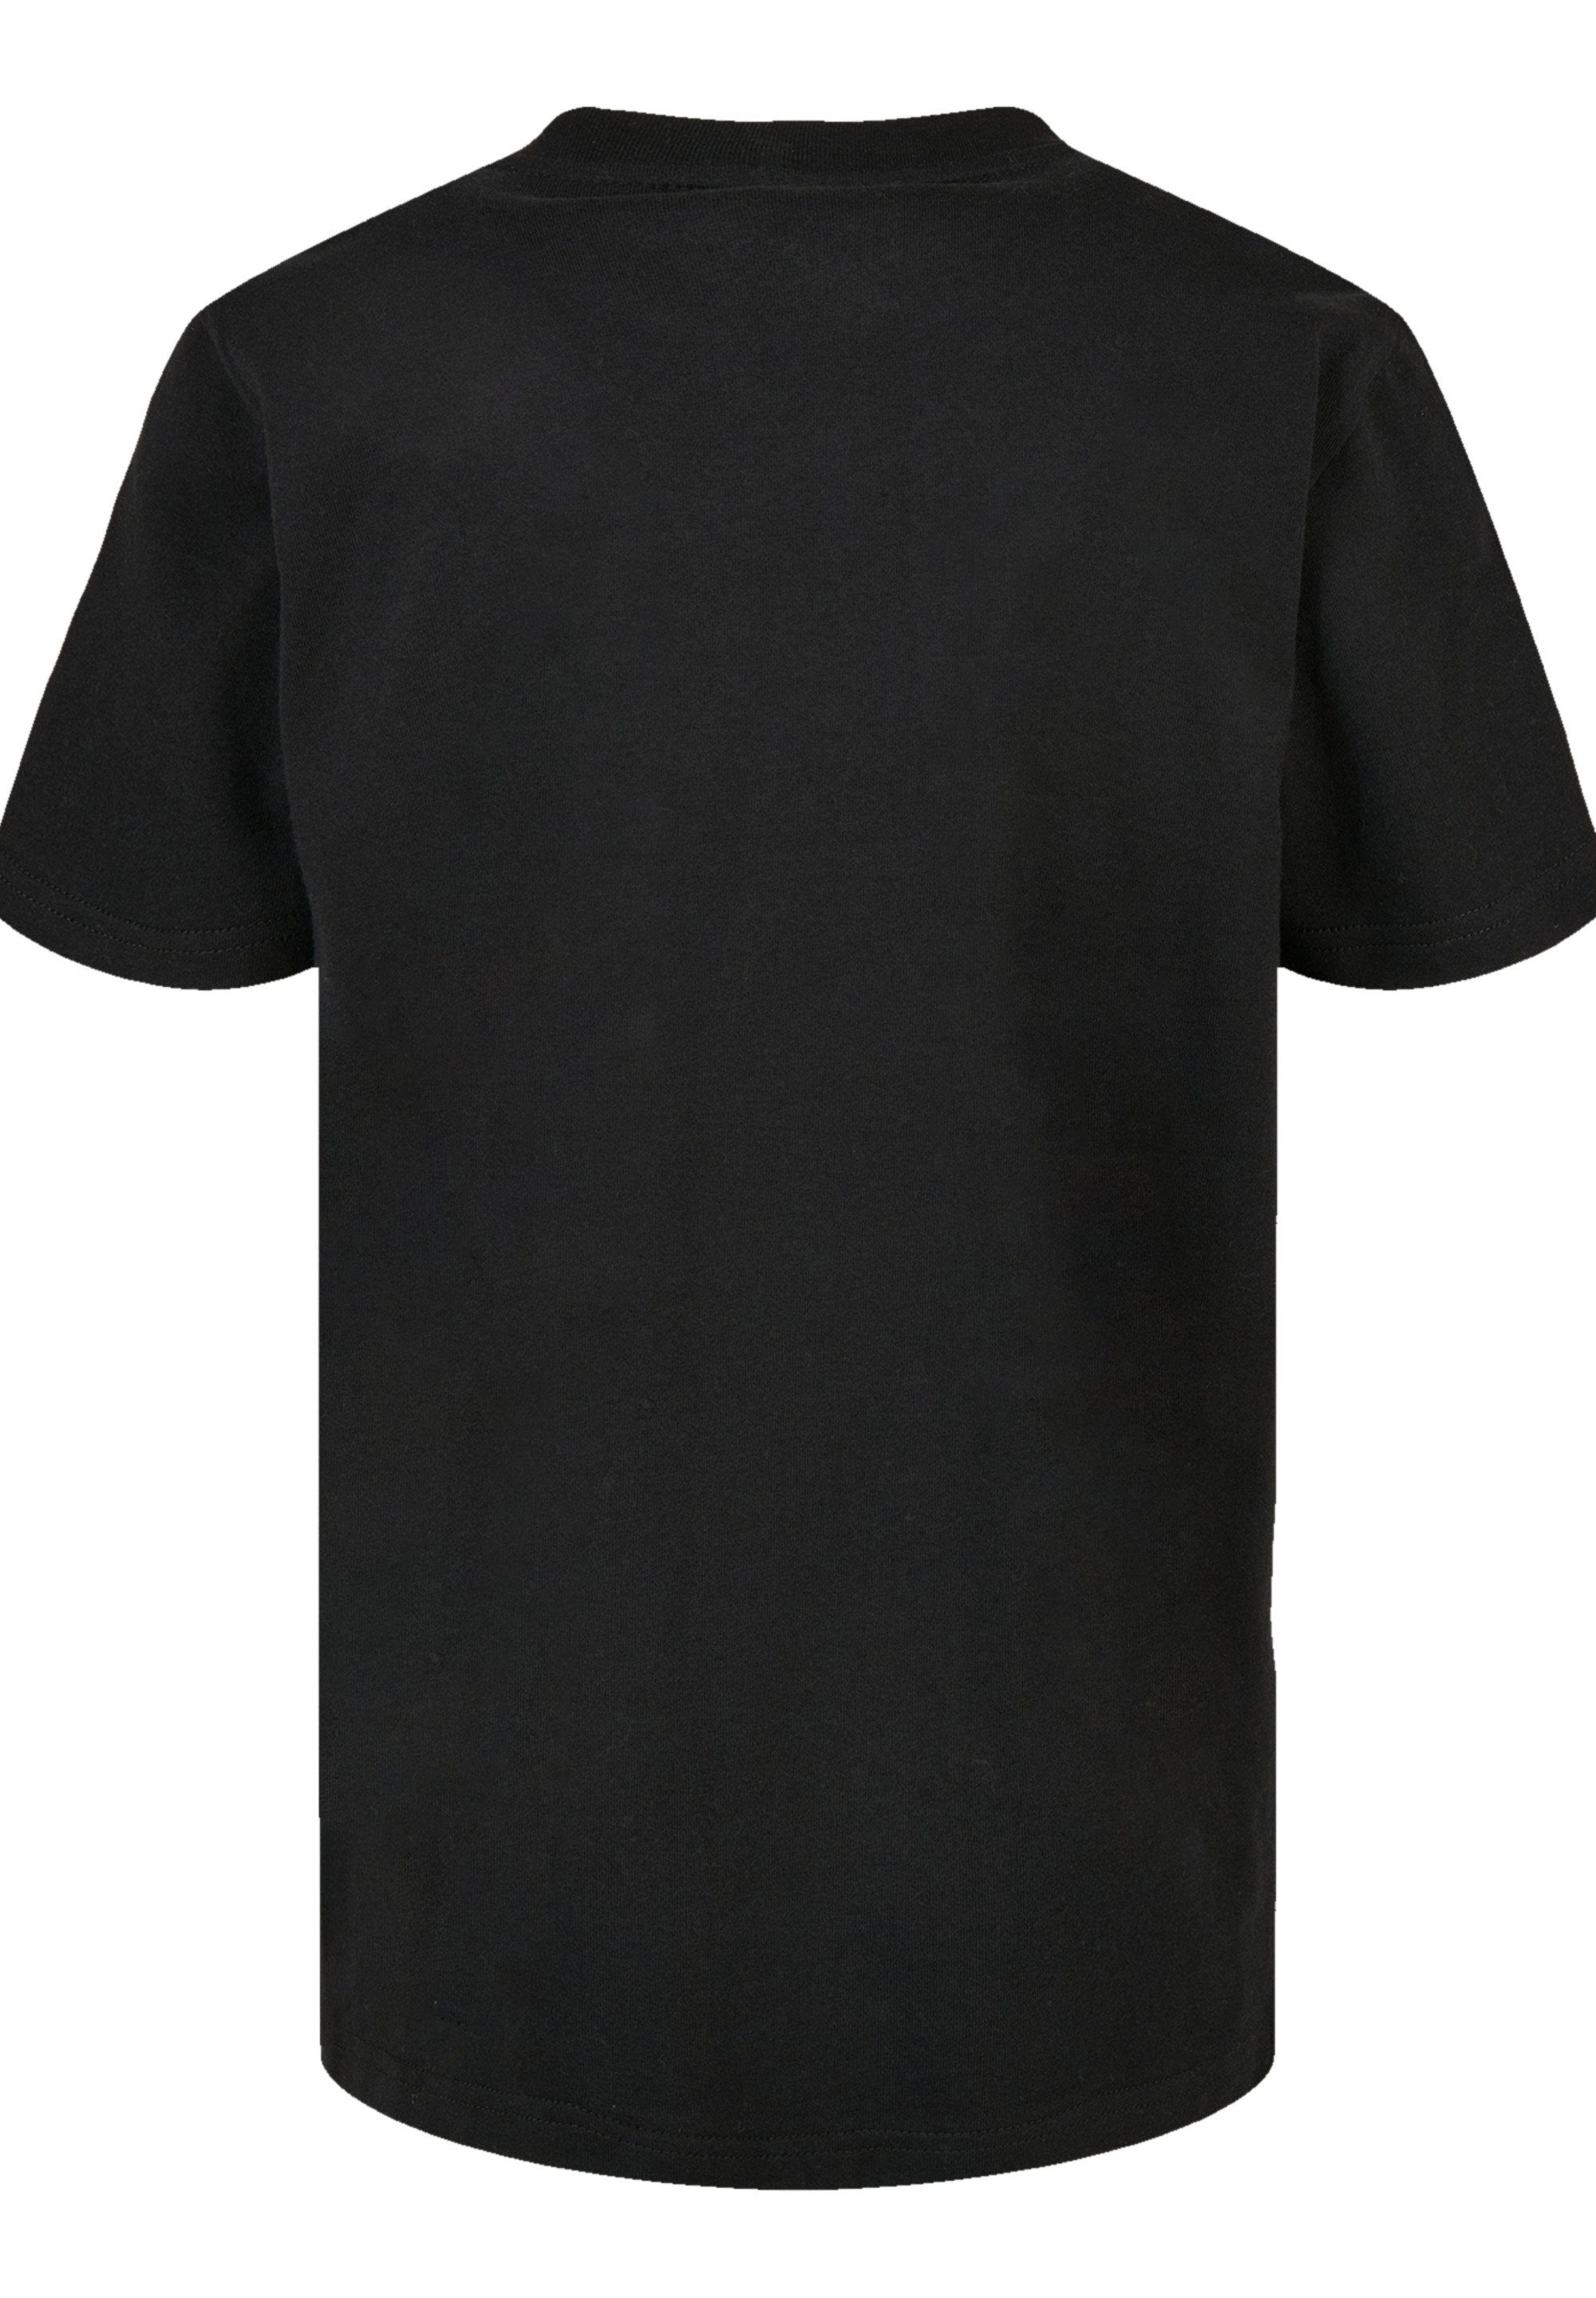 T-Shirt mit Sehr Tragekomfort hohem F4NT4STIC Kiss God Musik,Band,Logo, Baumwollstoff Rock Music weicher